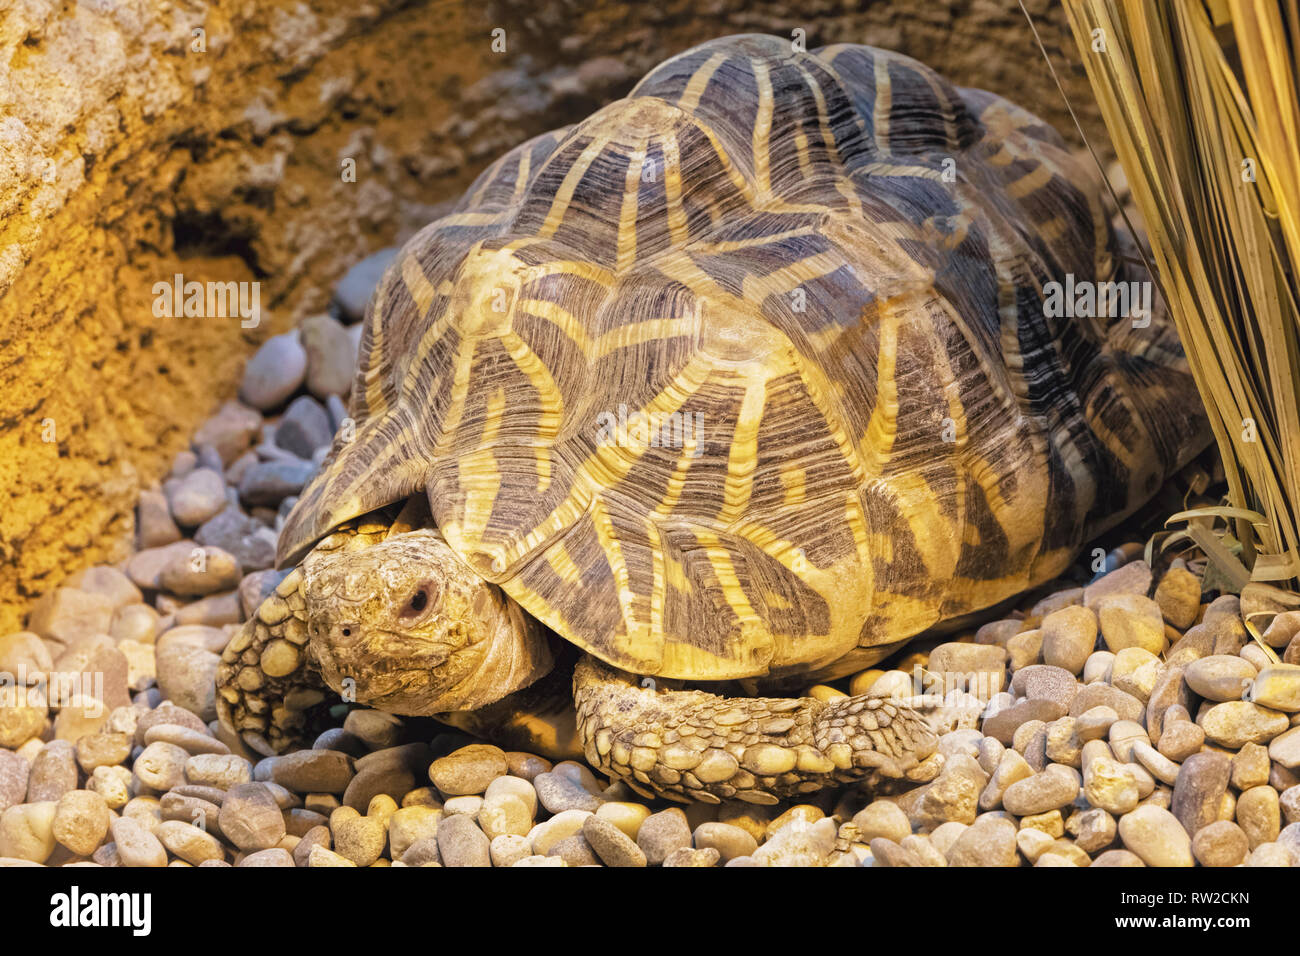 Indische Stern Schildkröte, Geochelone elegans ist eine bedrohte Schildkröte native auf den trockenen Gebieten und scheuern Wald in Indien und Sri Lanka. Stockfoto